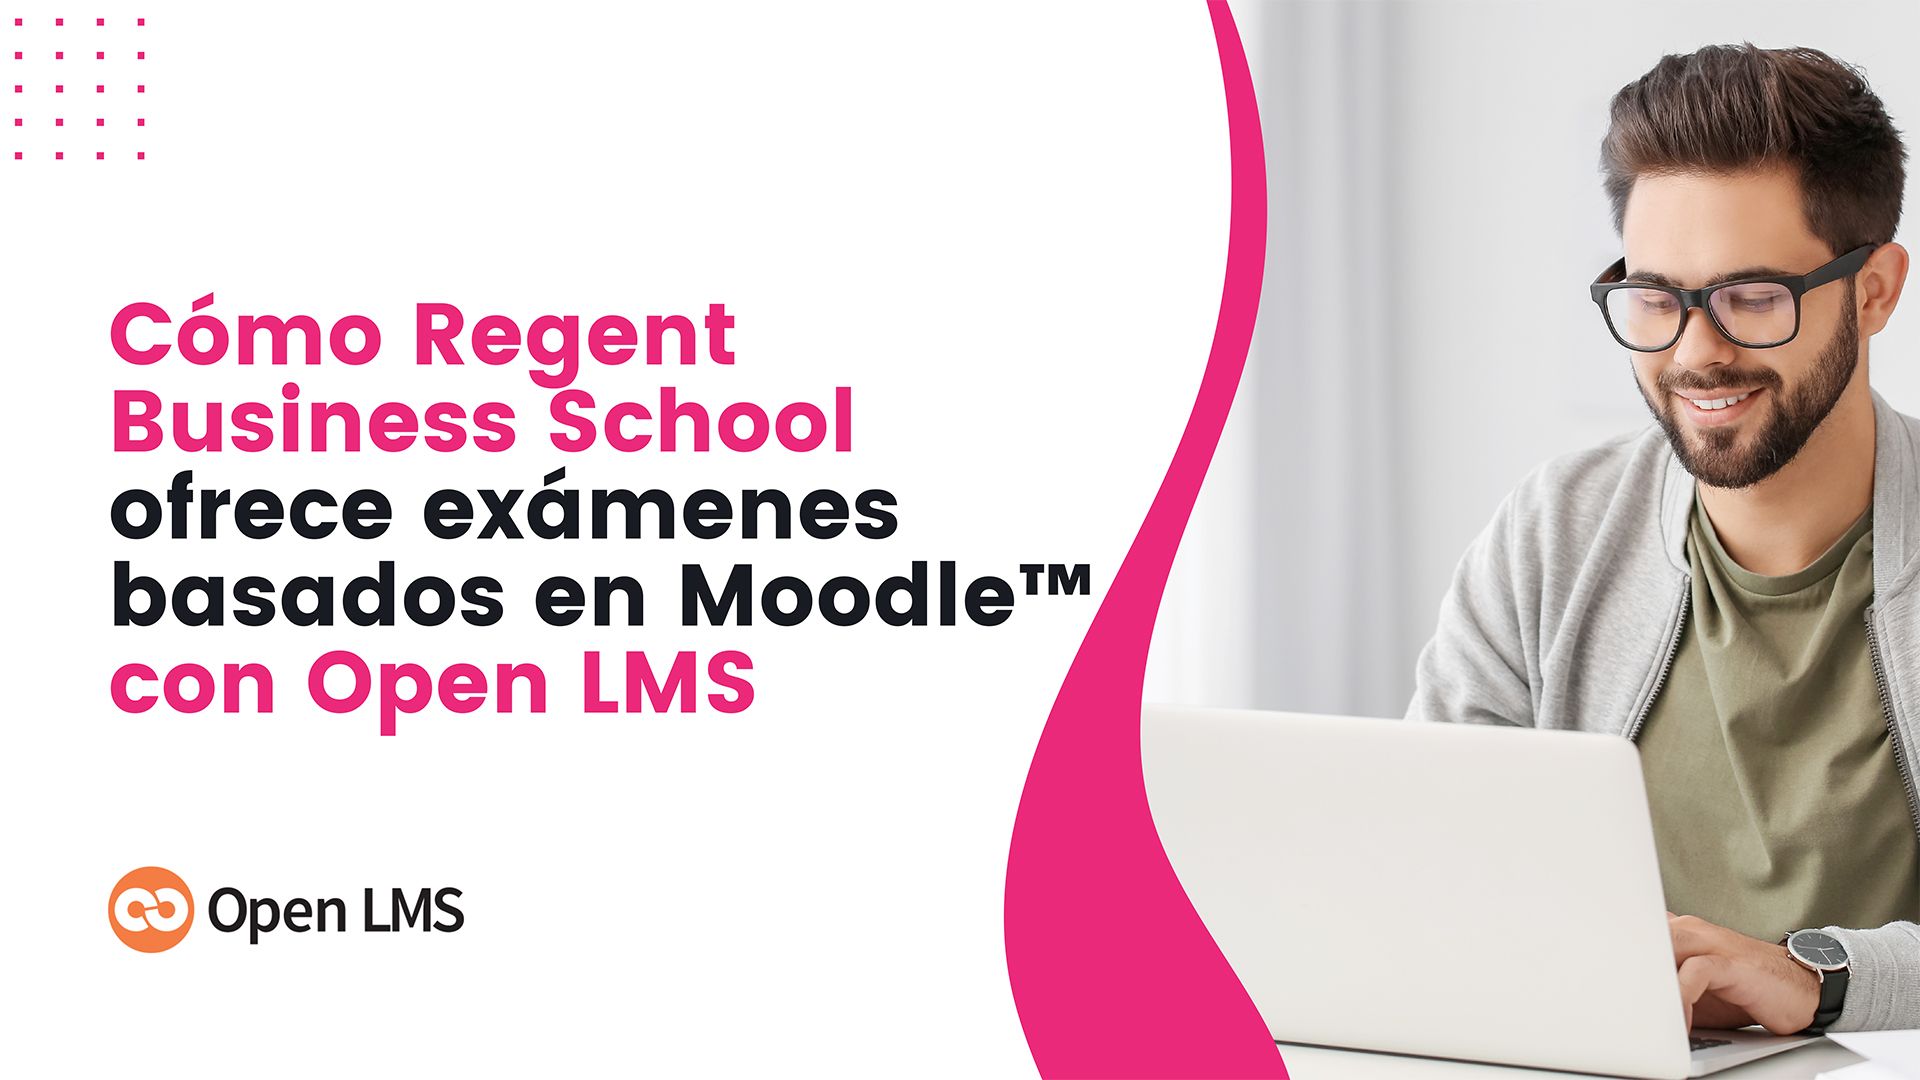 Cómo Regent Business School ofrece exámenes basados en Moodle™ con Open LMS